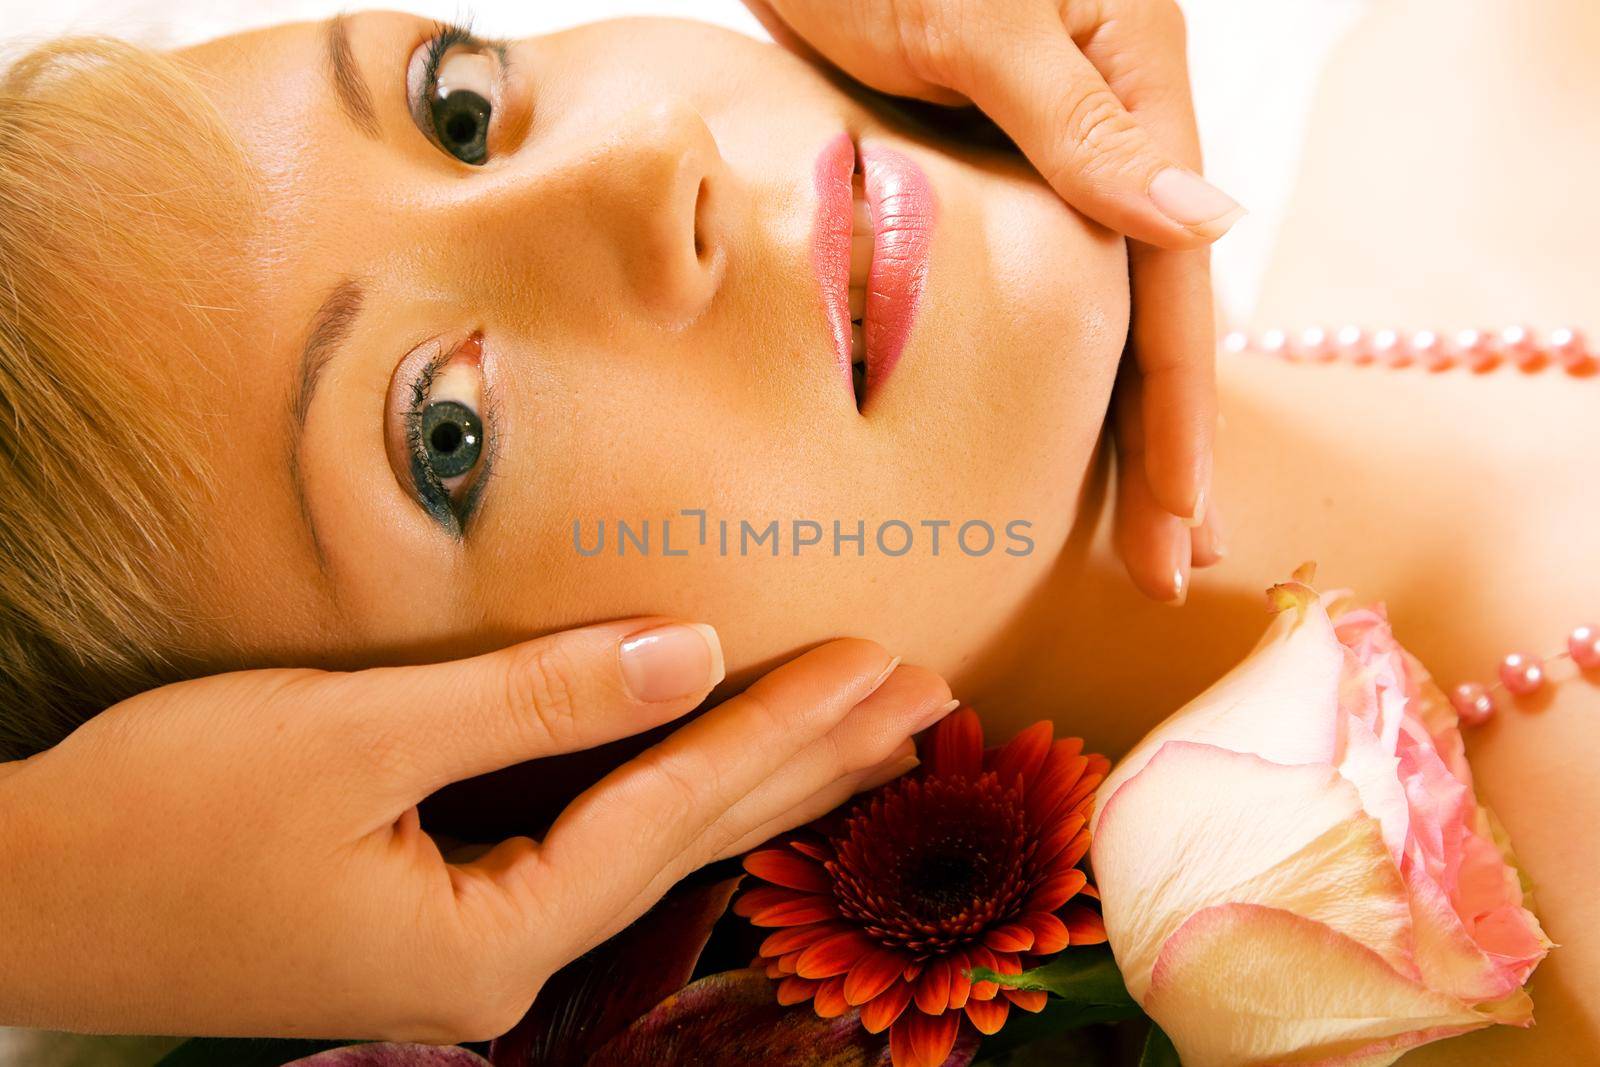 Beautiful woman enjoying a head massage